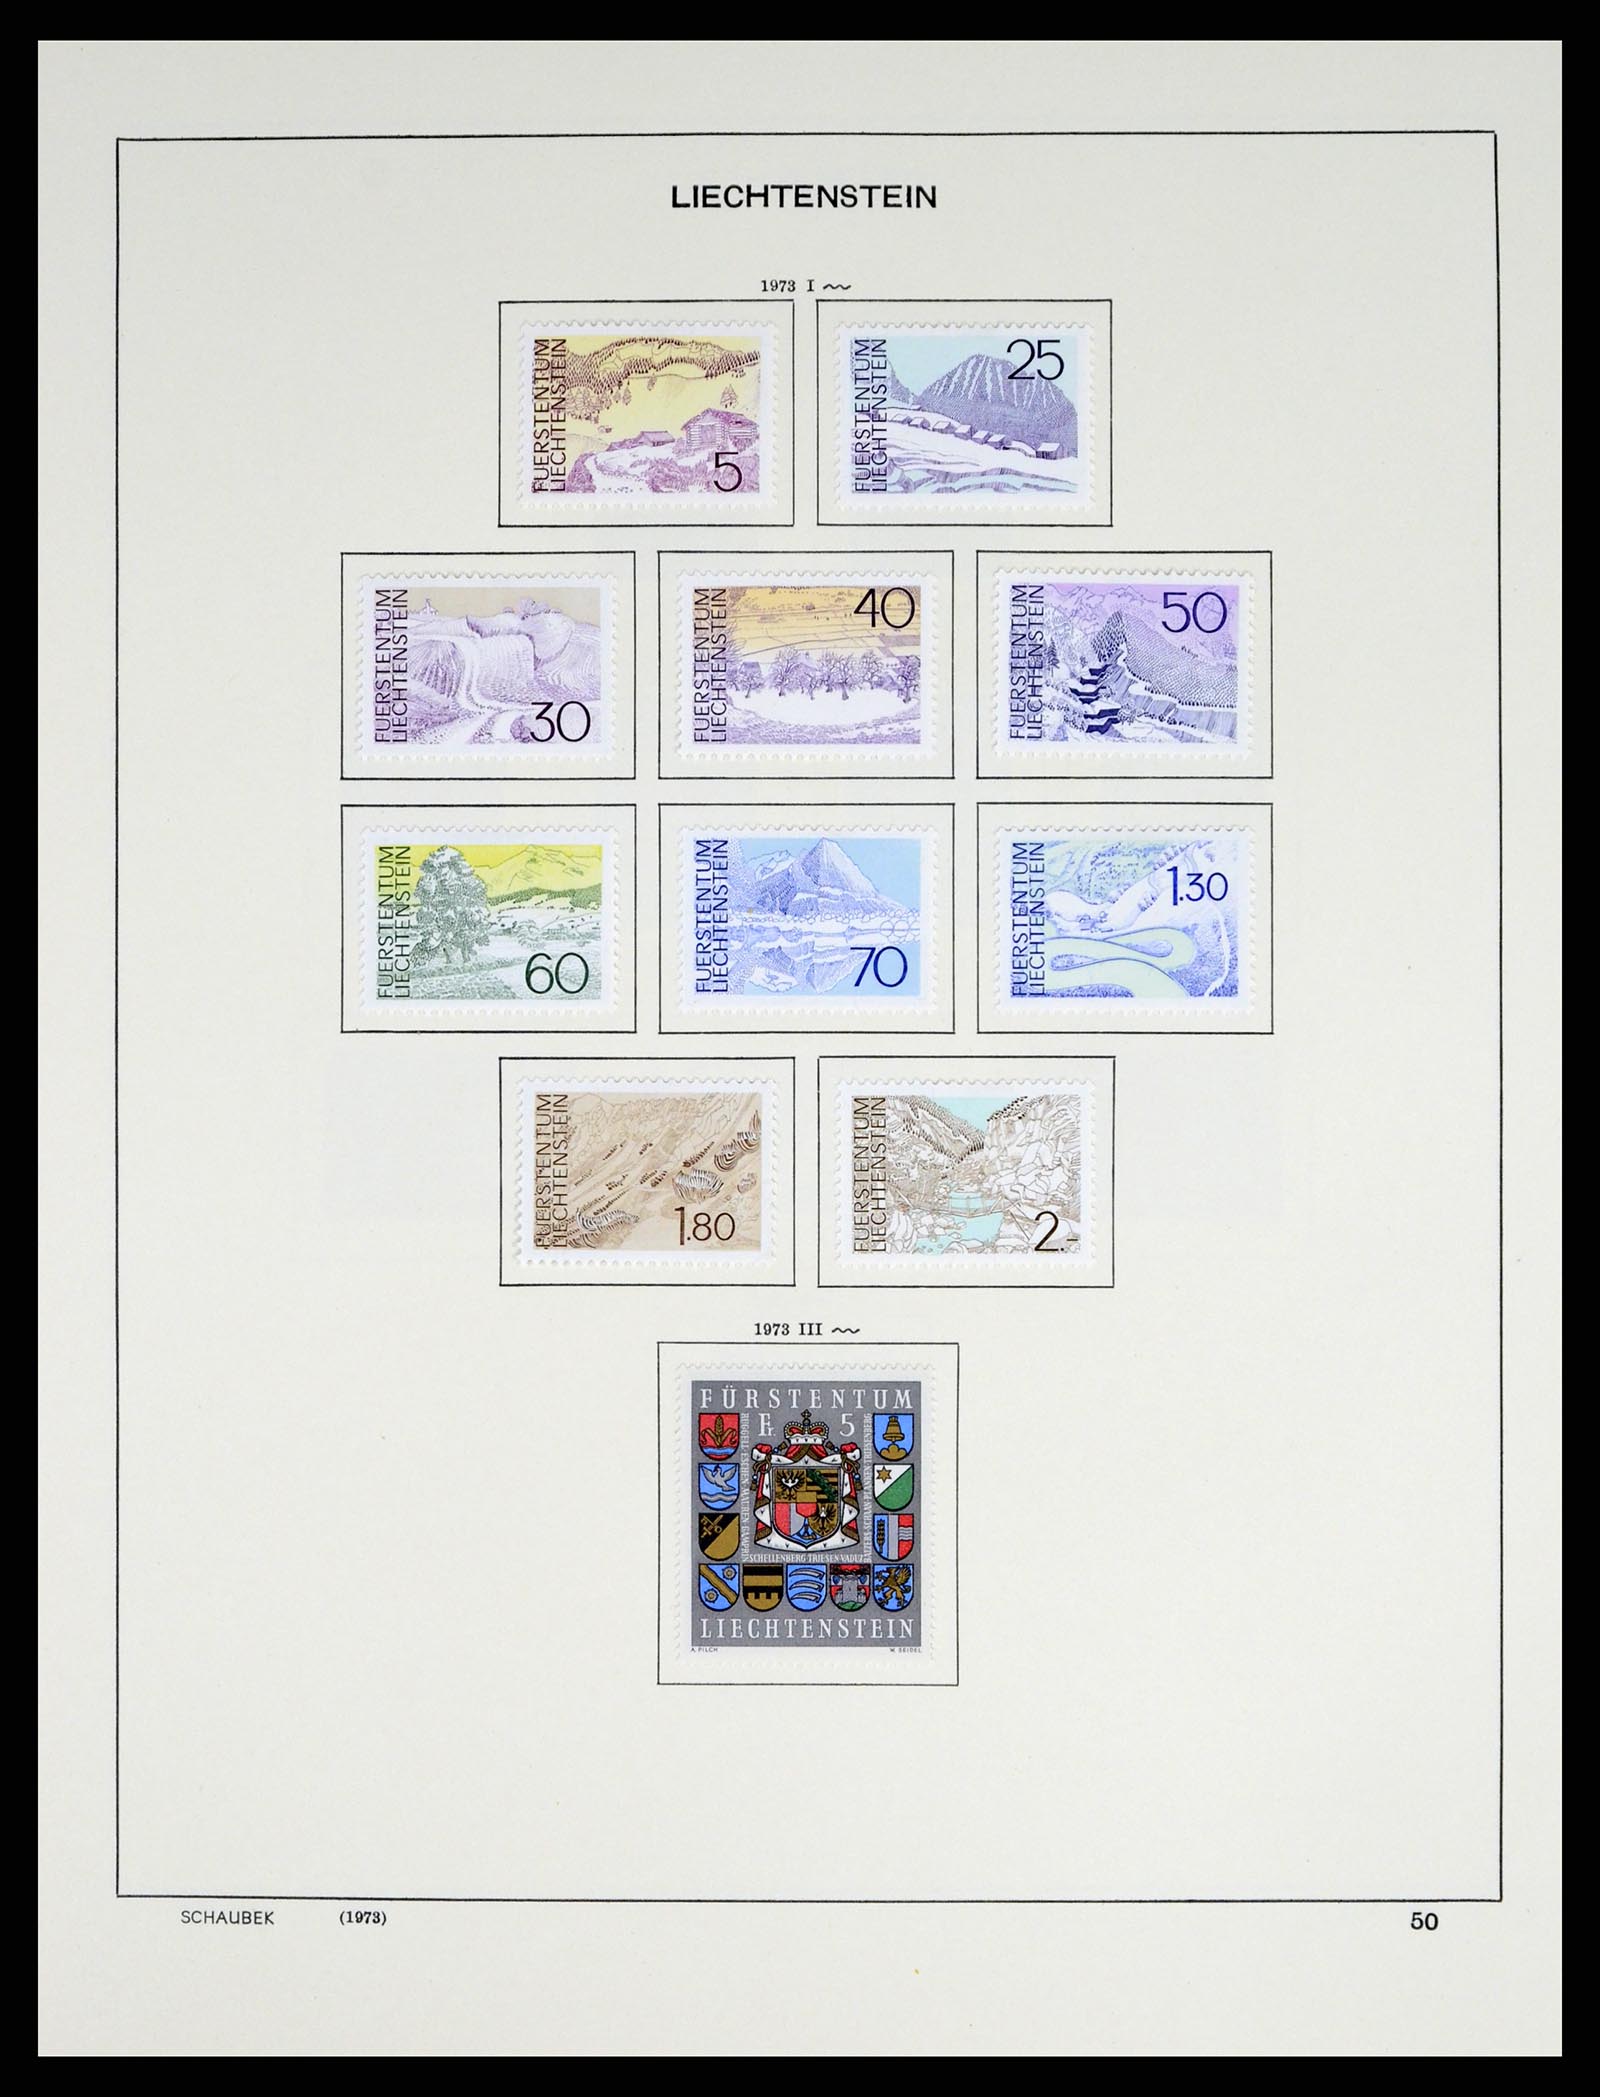 37547 062 - Stamp collection 37547 Liechtenstein 1912-2011.